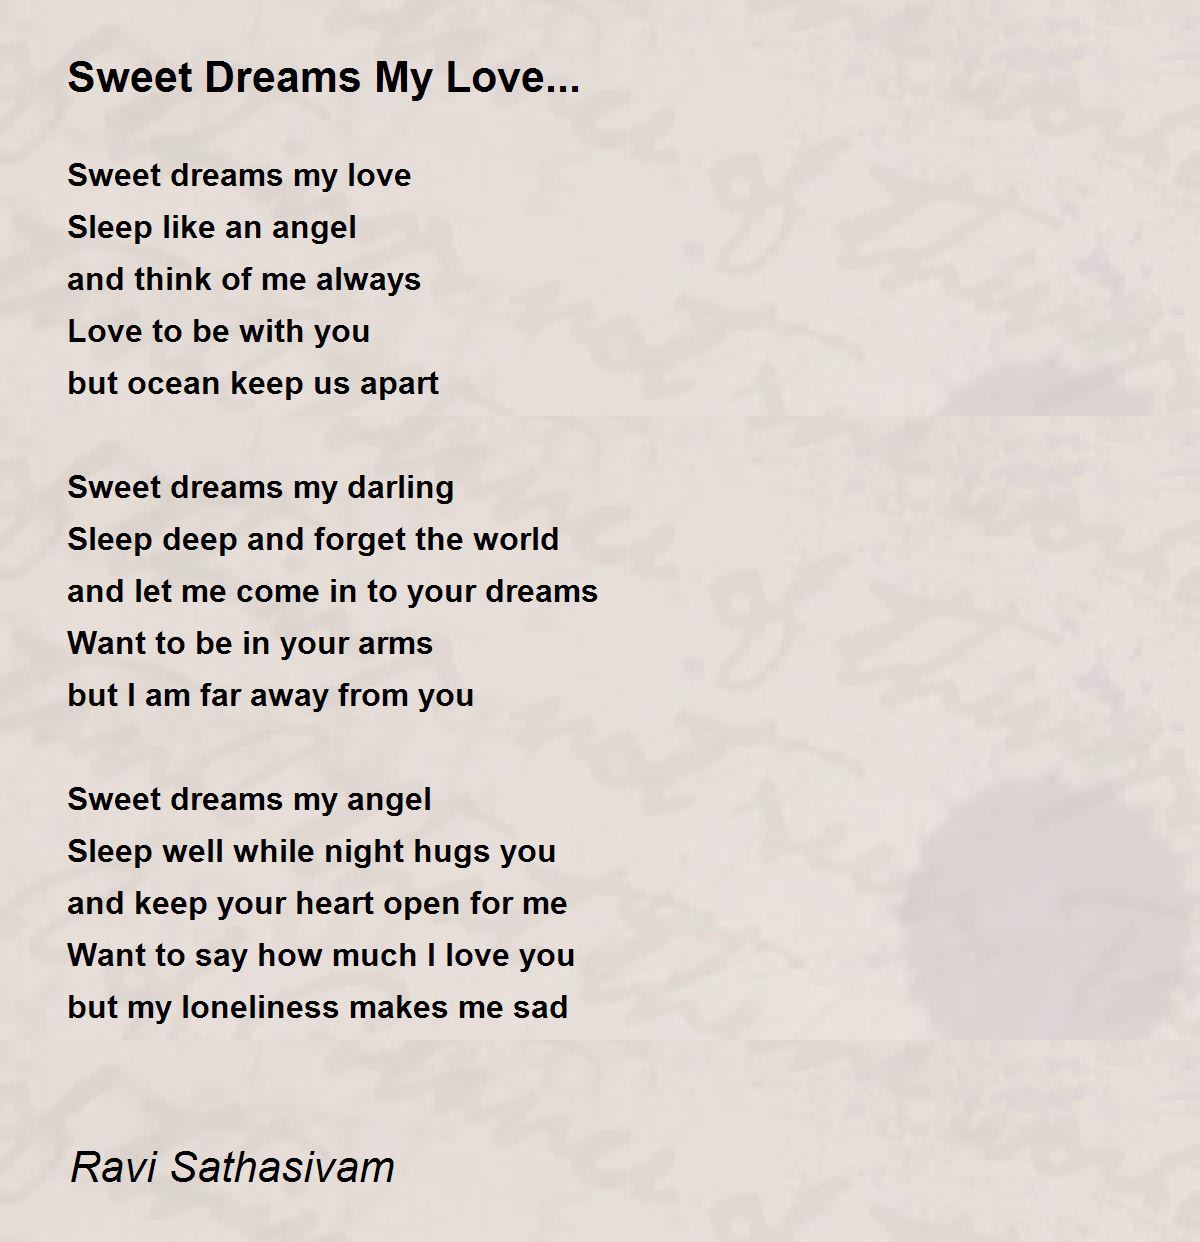 Sweet dreams my love poem